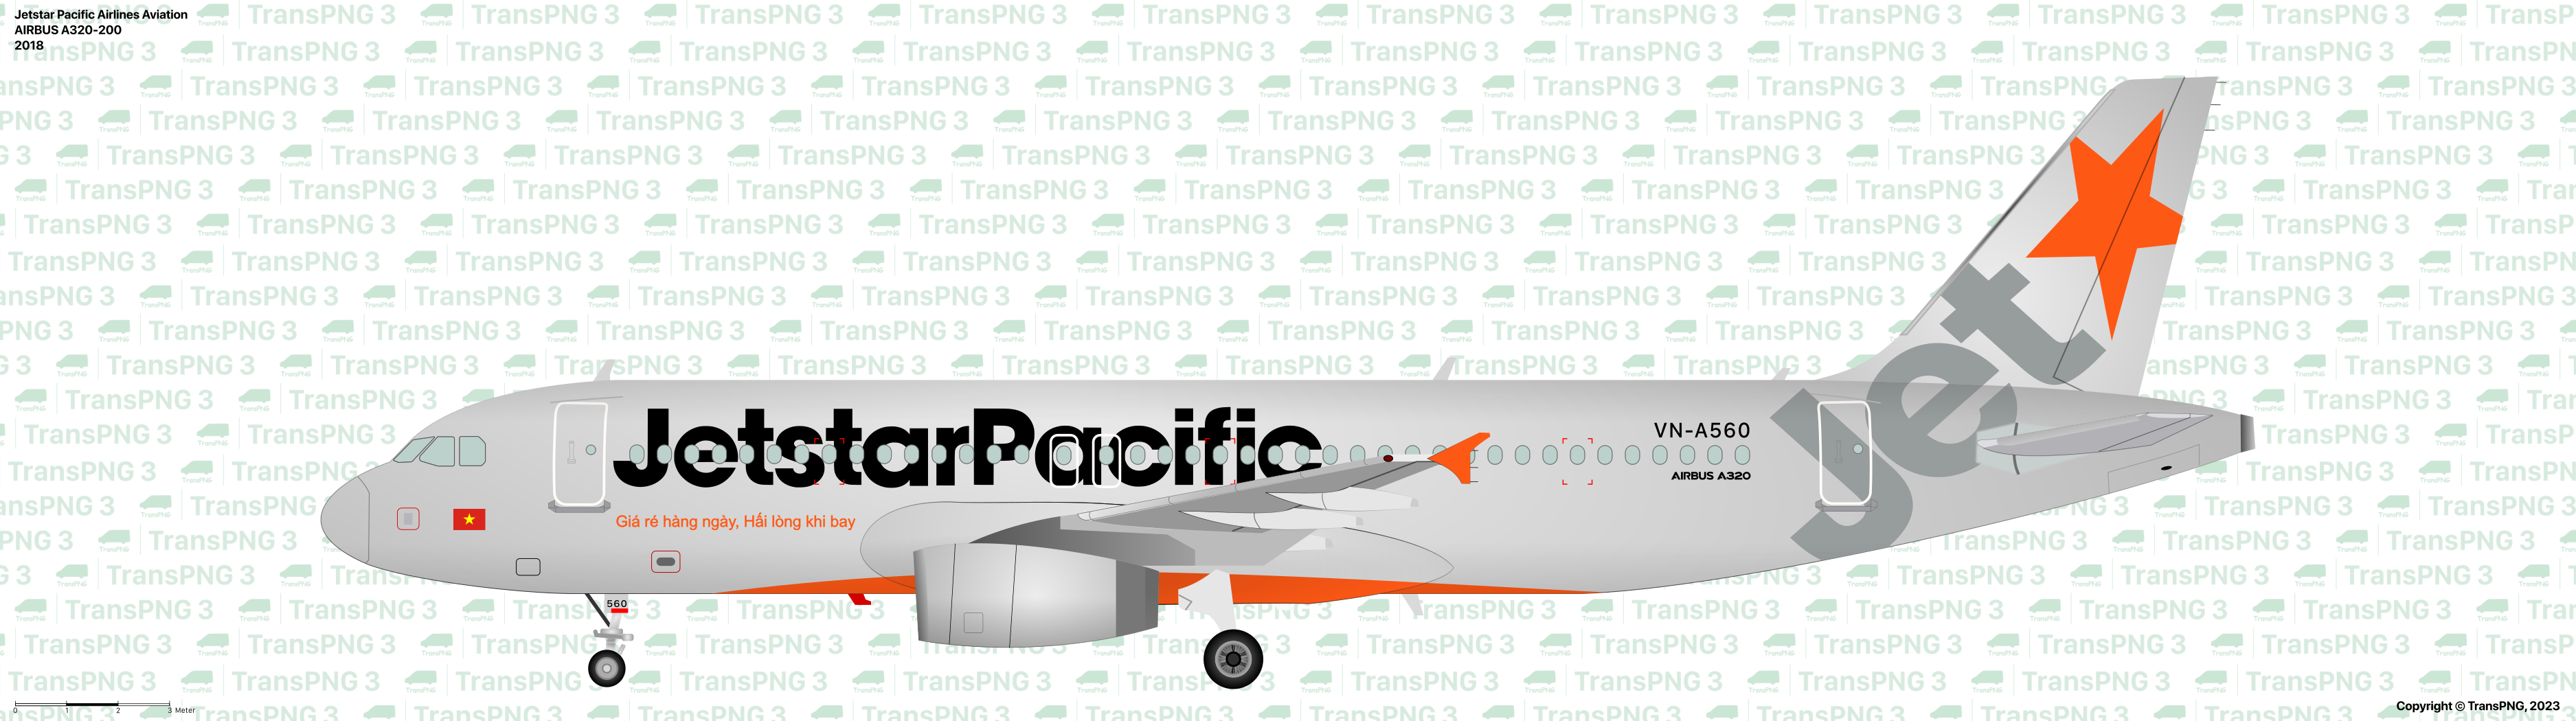 TransPNG | 分享世界各地多种交通工具的优秀绘图 - 客机 53300166009_47ec14d6c1_o